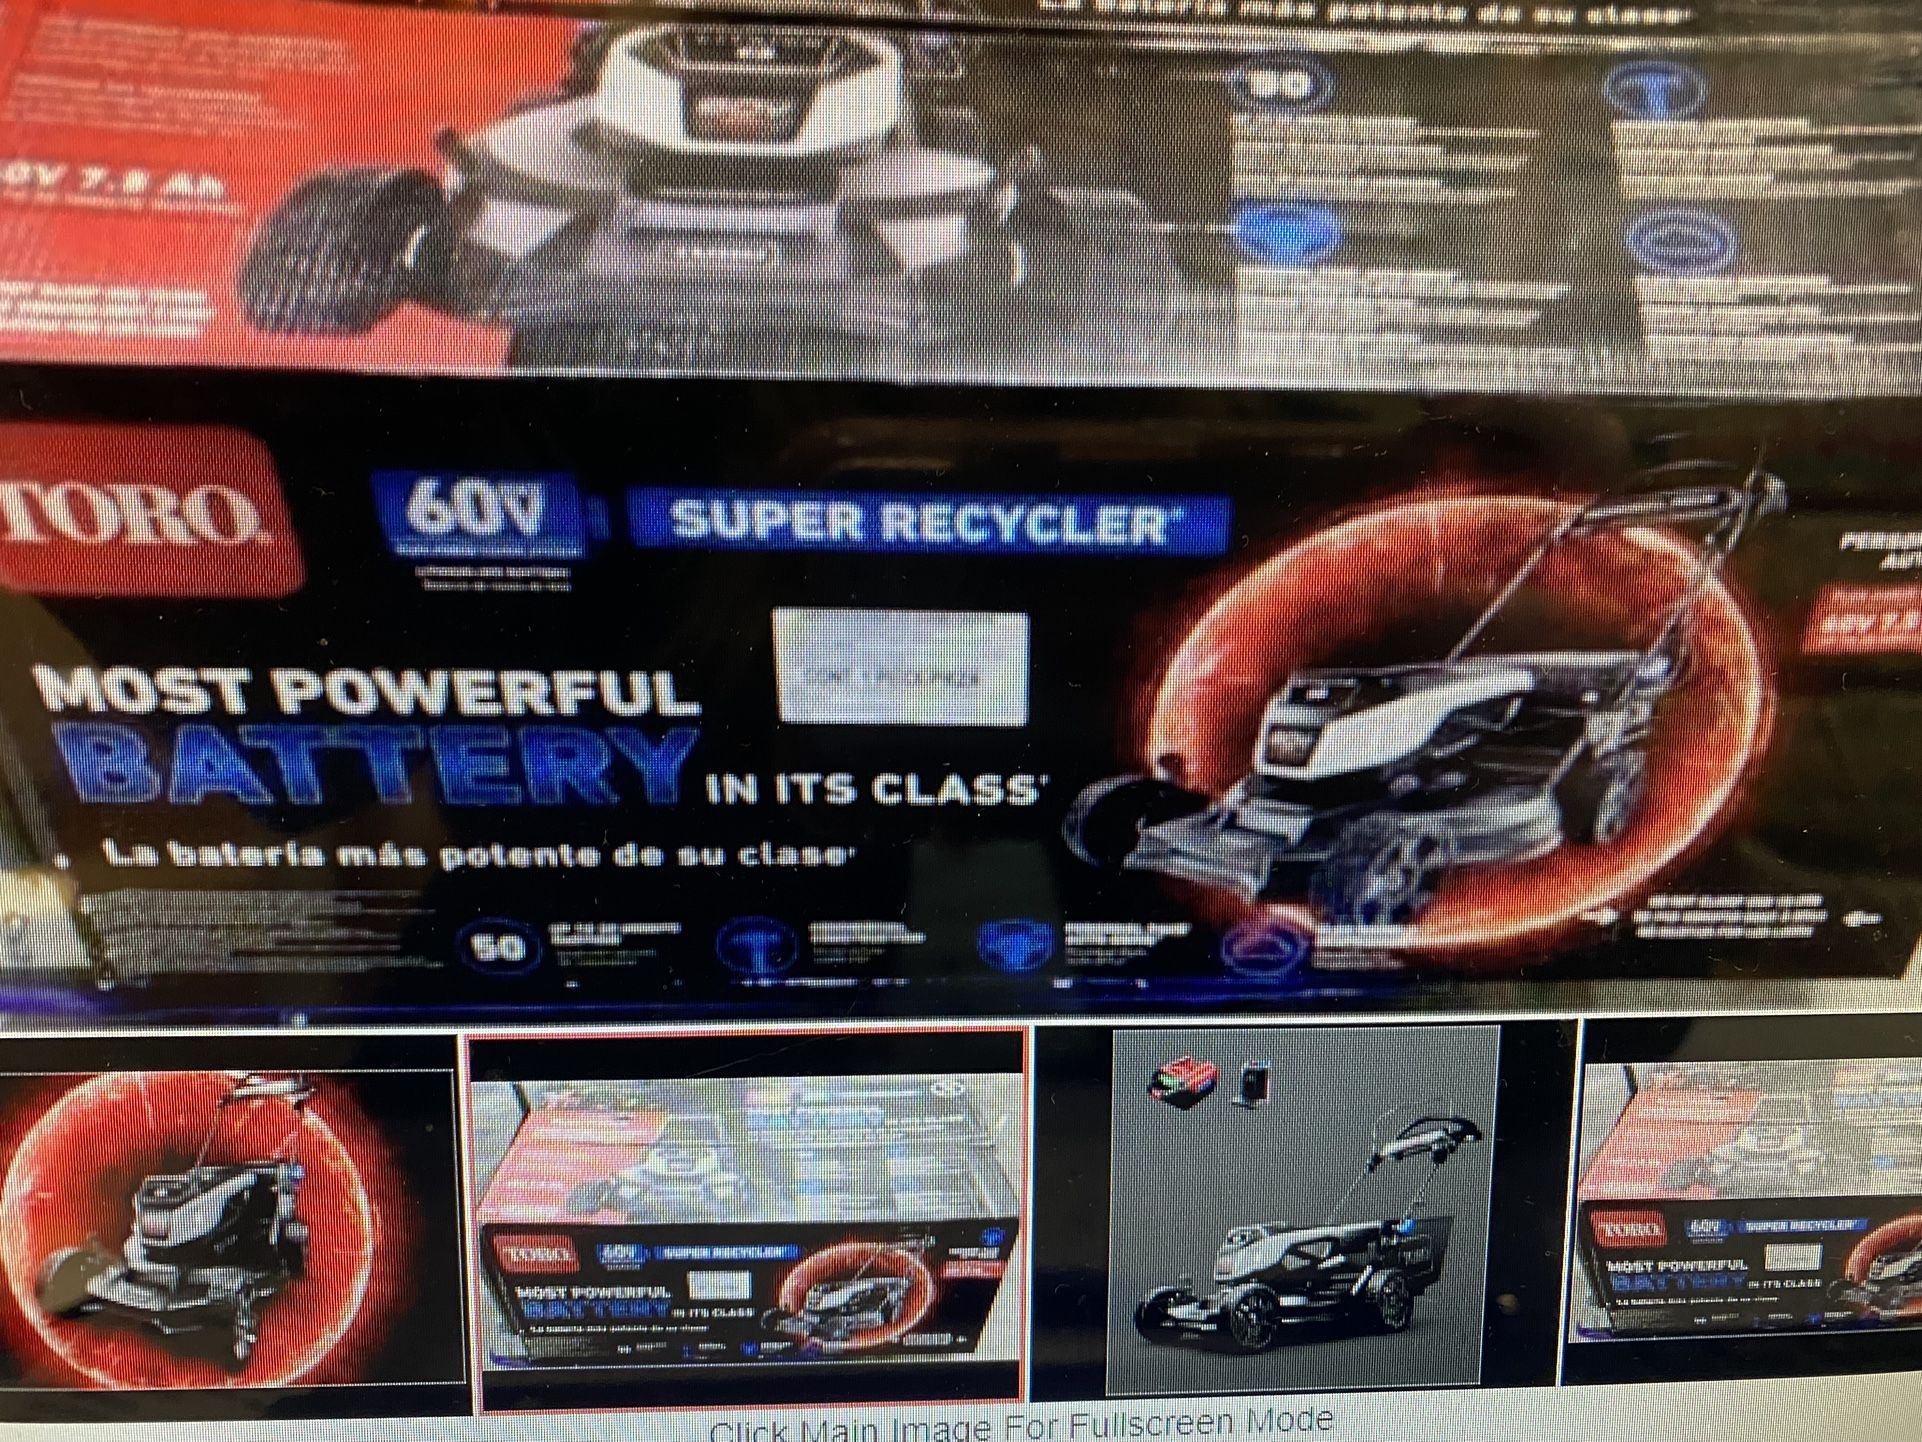 Brand New In Box TORO Super recycler Lawnmower 